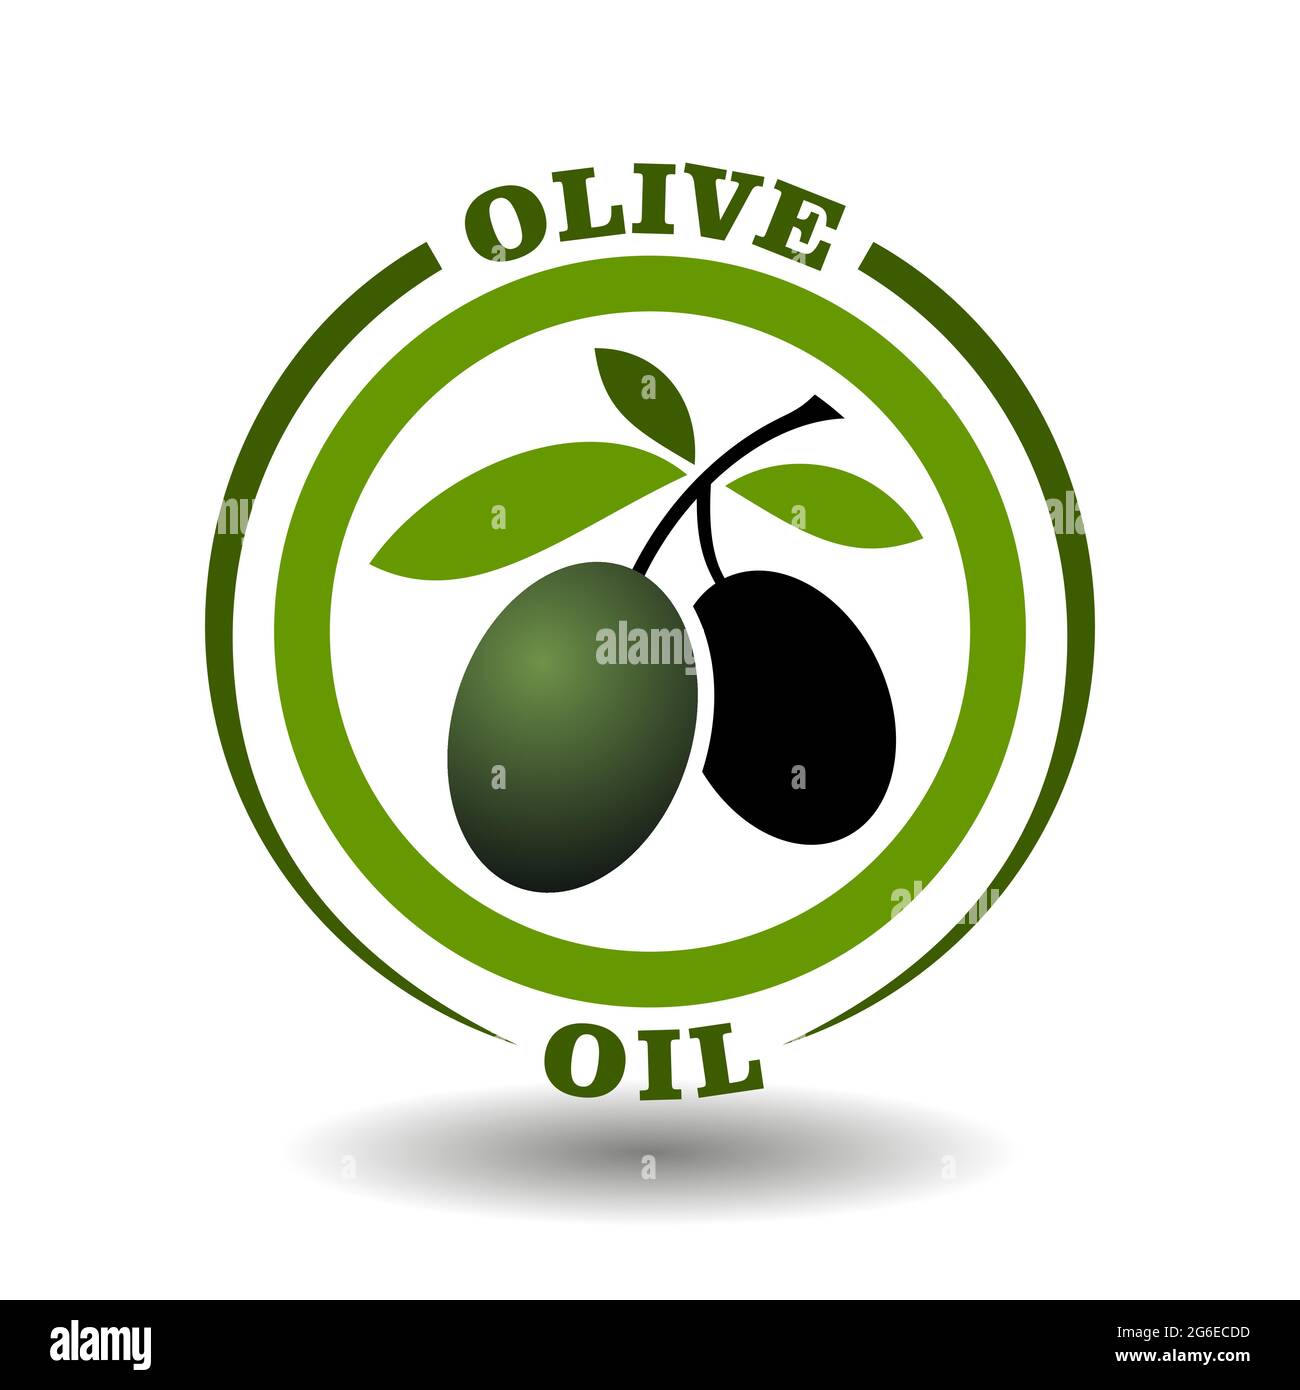 Logo cercle vectoriel huile d'olive avec branche de feuilles vertes et symbole de fruits noirs sur un pictogramme rond pour l'enseigne des cosmétiques biologiques, étiquettes d'étiquetage des aliments naturels Illustration de Vecteur